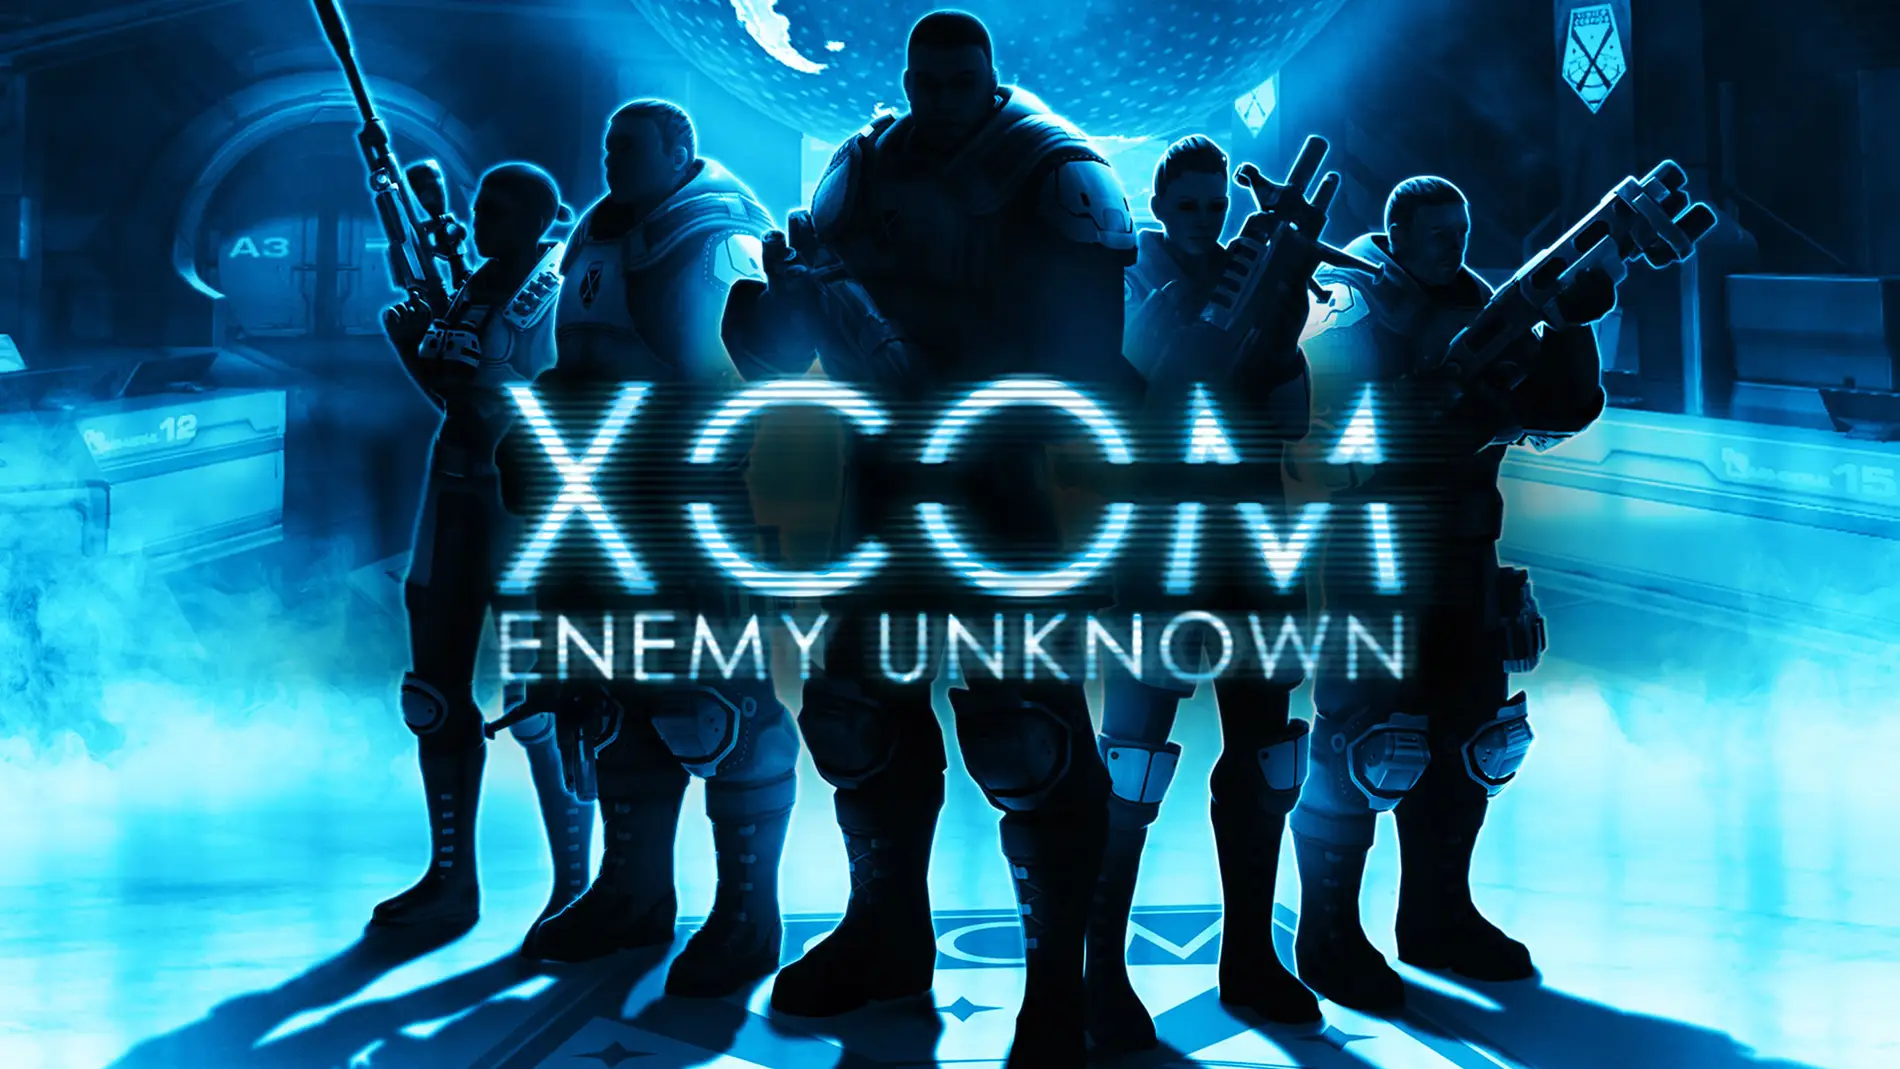 XCOM: Enemy Unknow